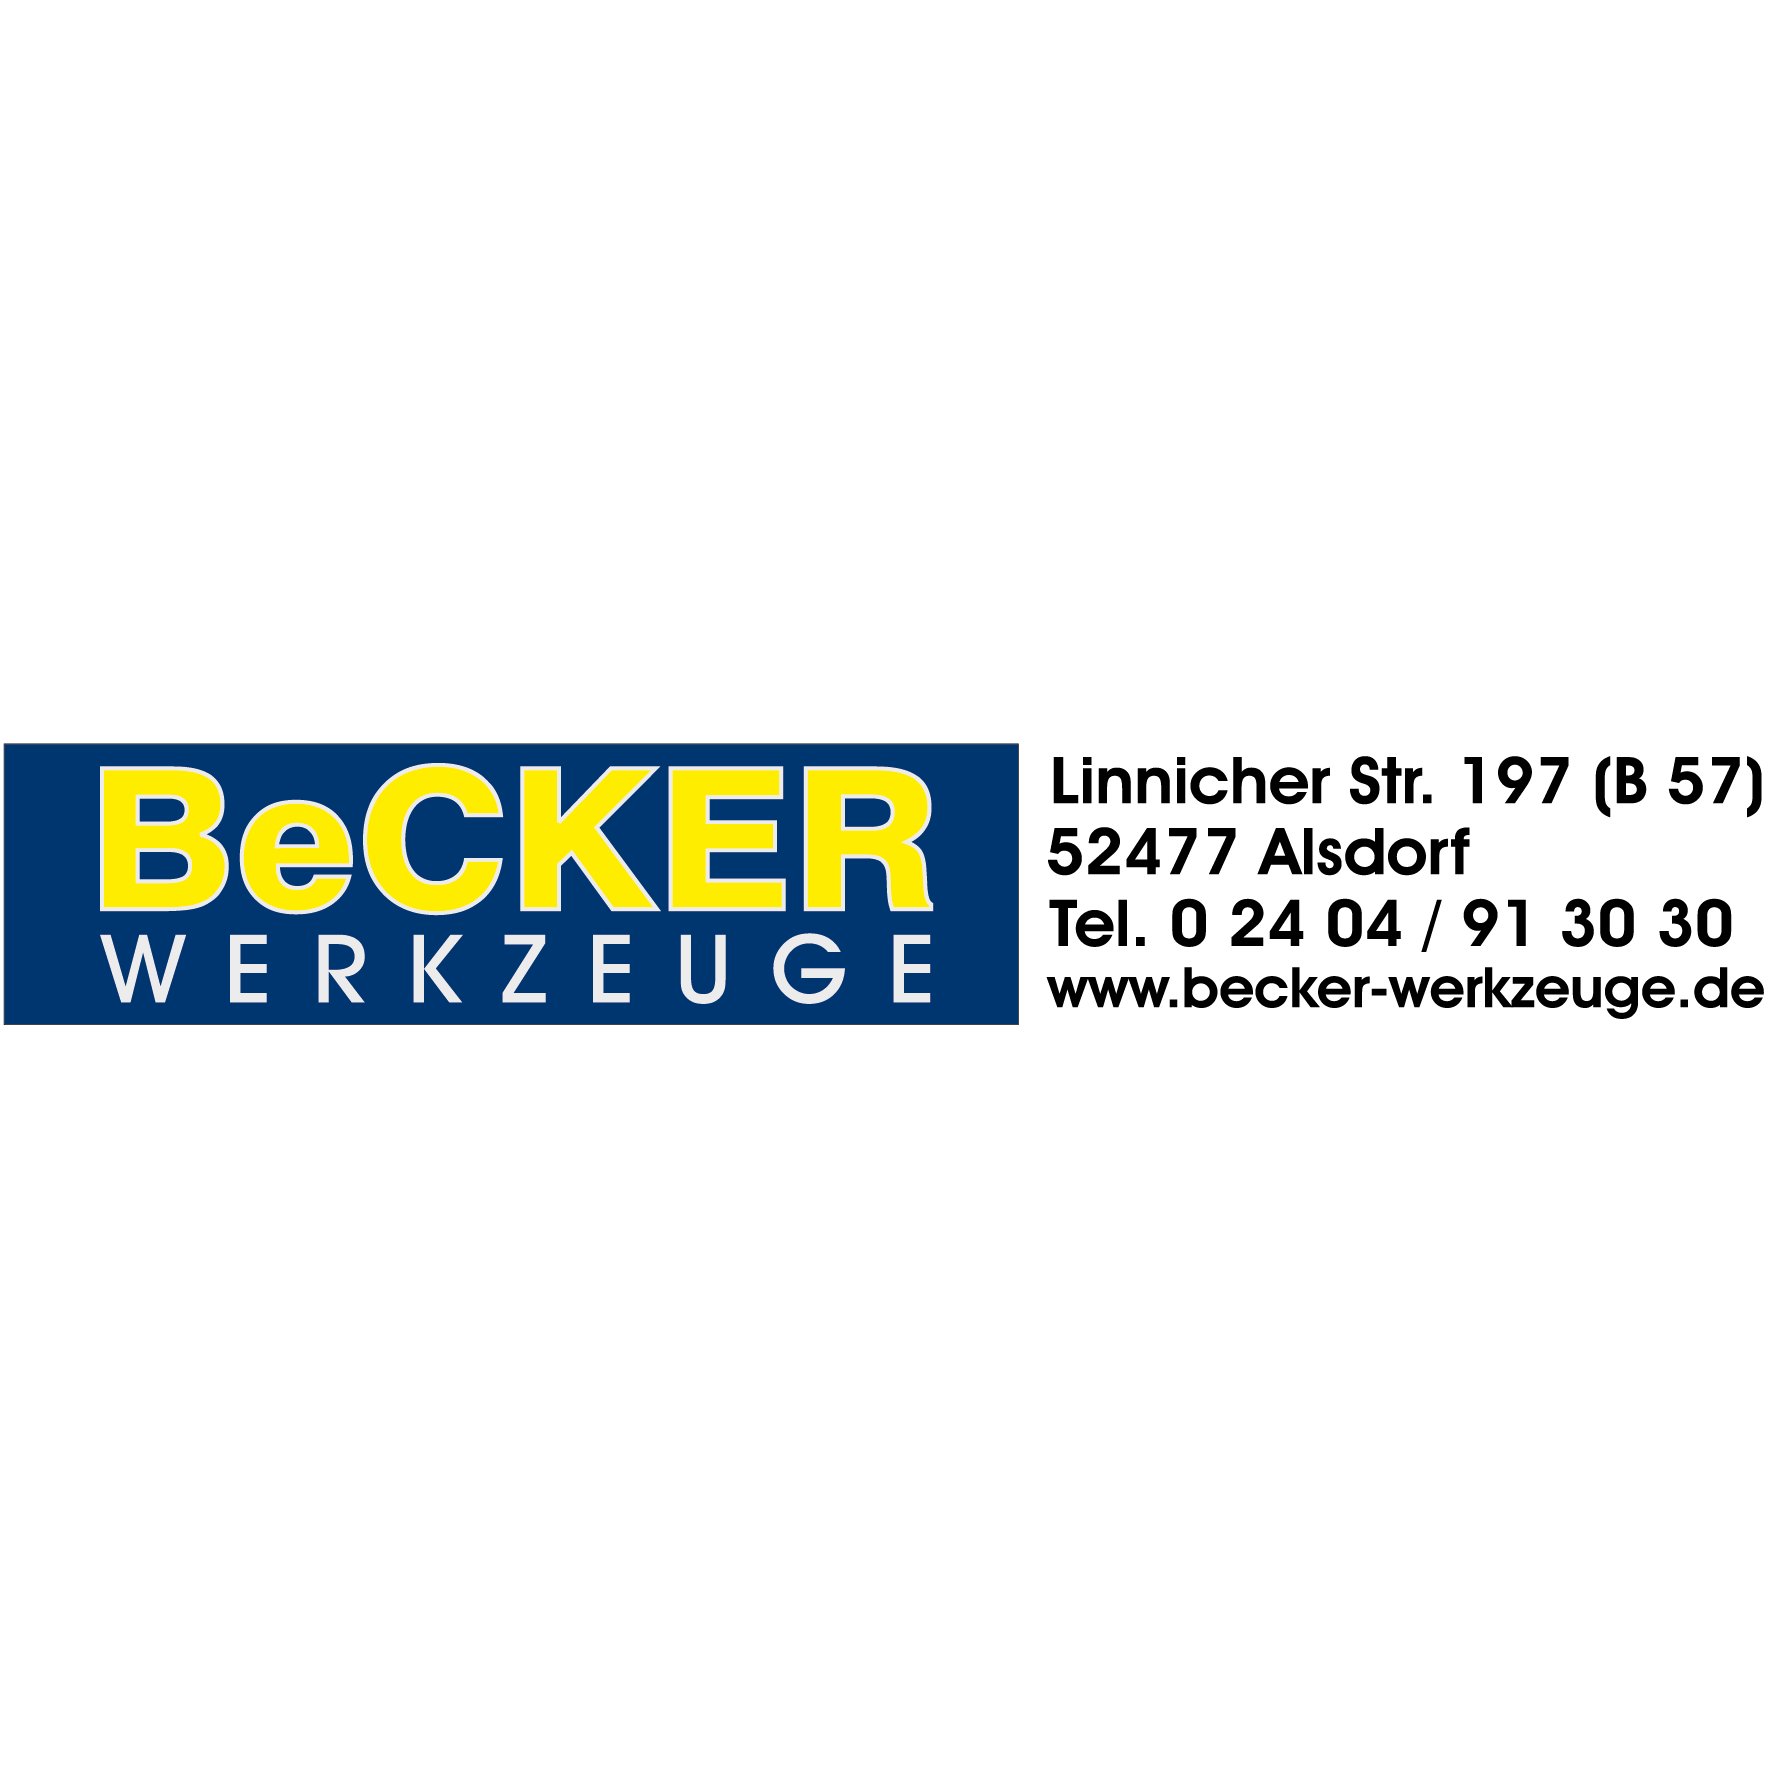 BeCKER - Werkzeuge in Alsdorf im Rheinland - Logo